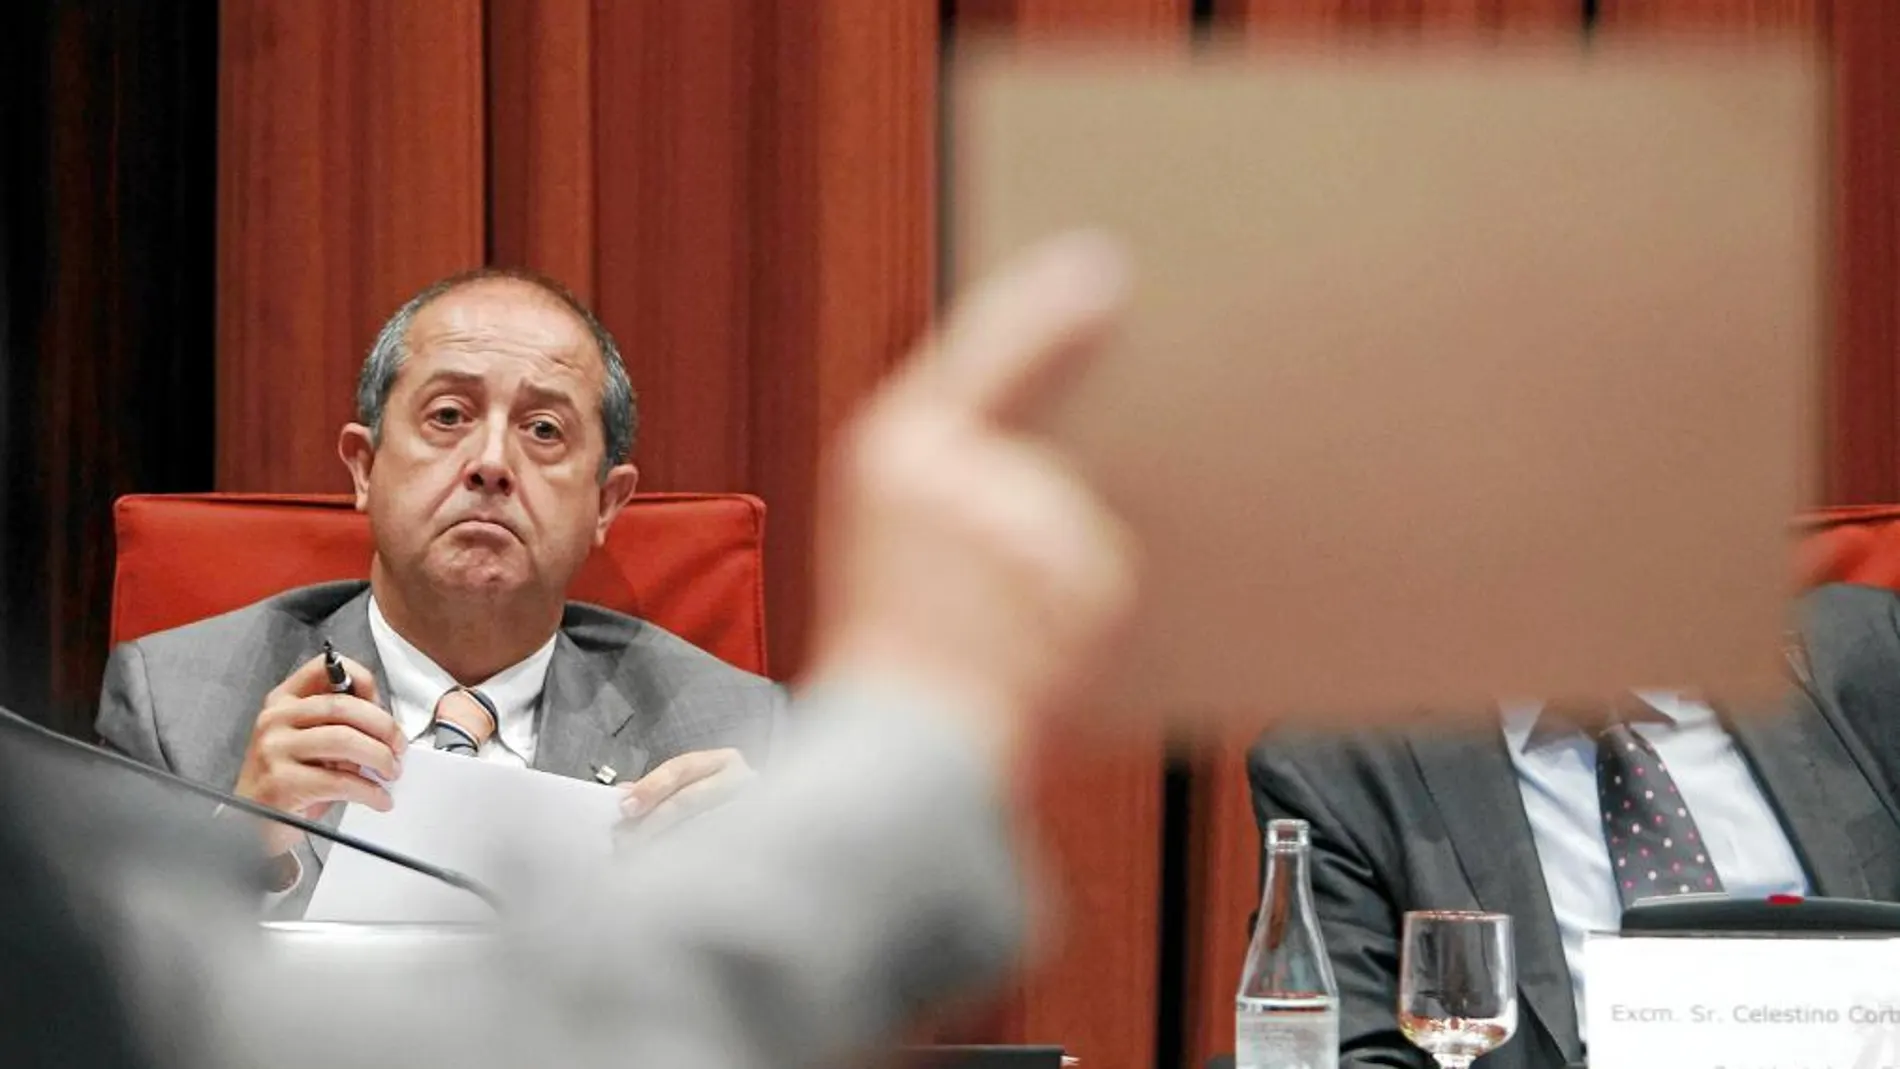 El ex conseller Felip Puig es uno de los cinco imputados